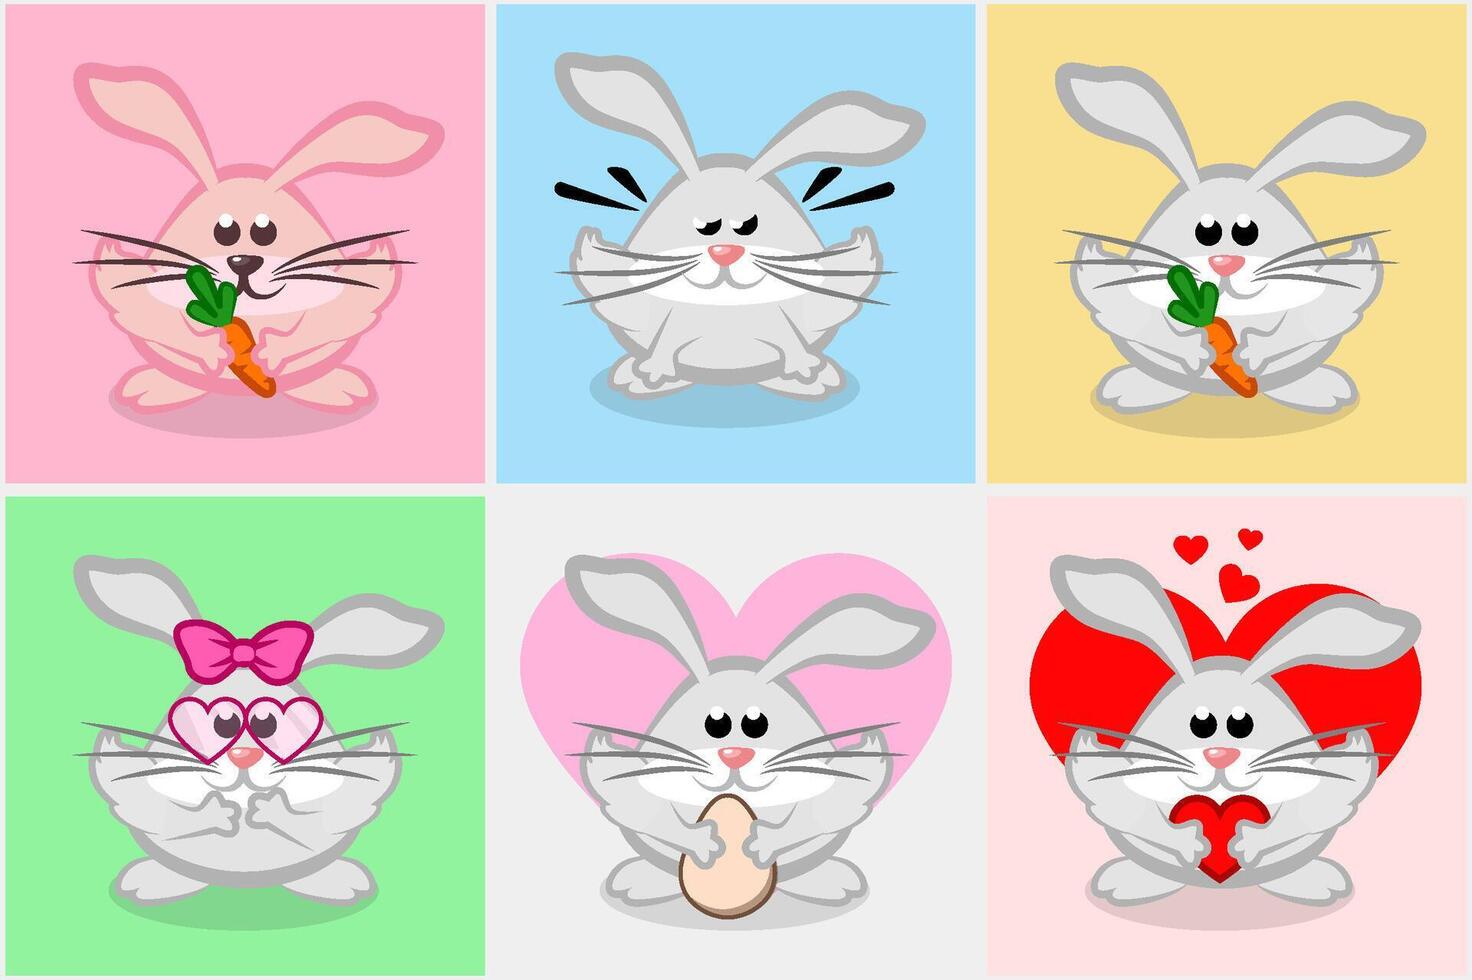 impostato di cartone animato conigli o coniglietti. vettore